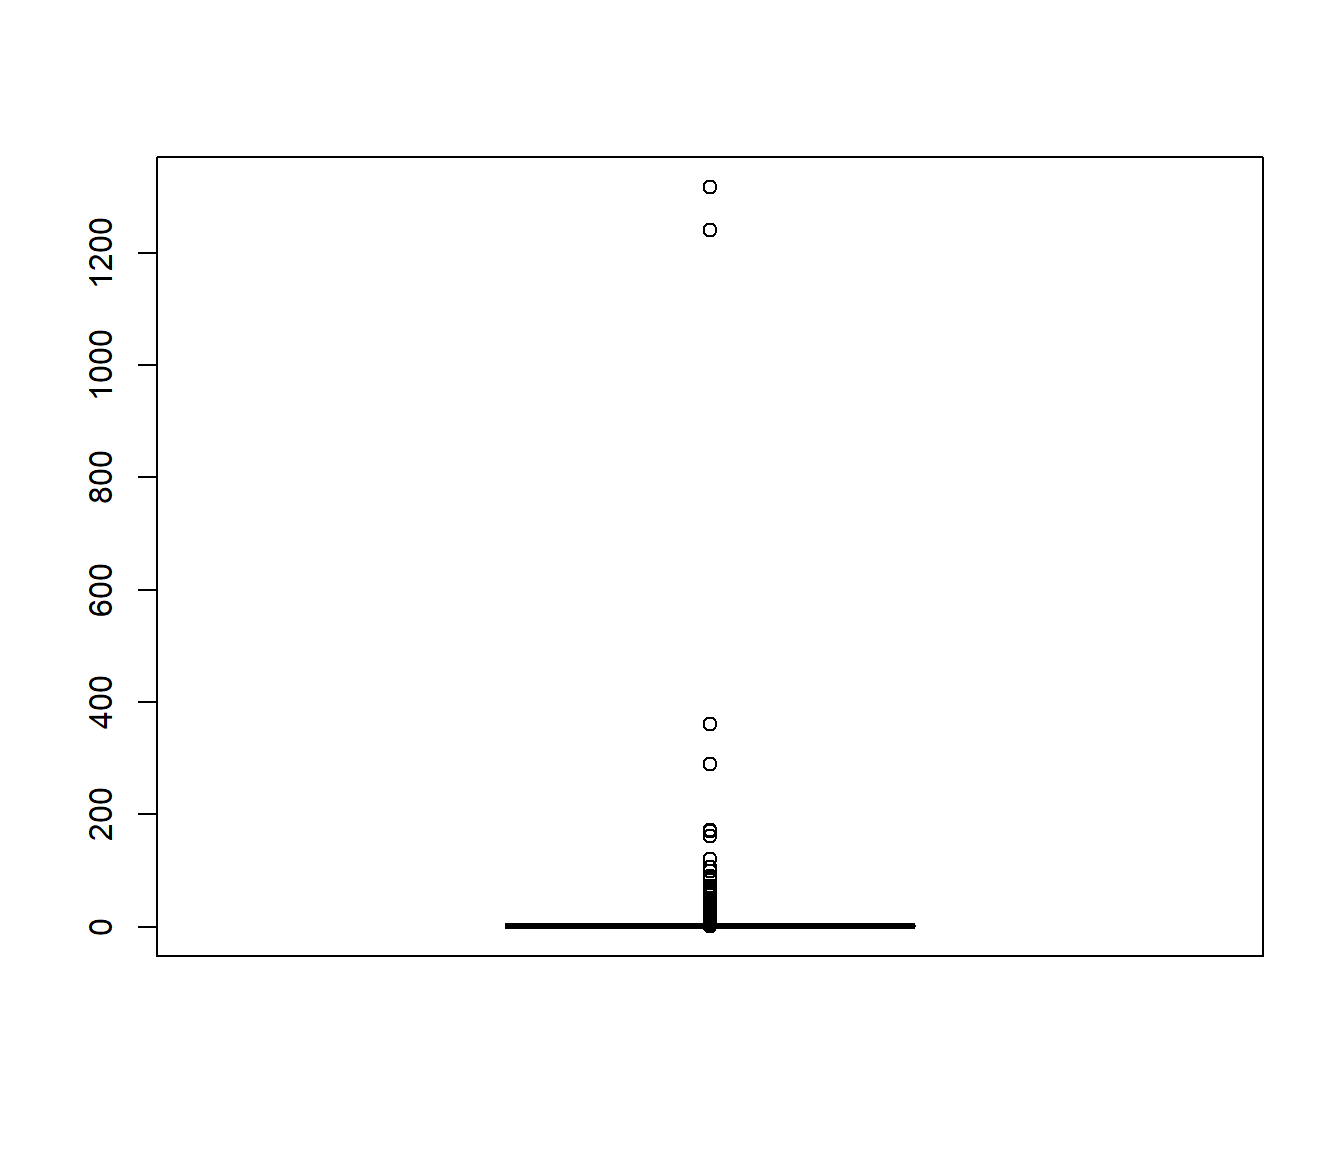 Gráfico de cajas de los pesos del muestreo por importancia reescalados (de forma que su media es 1).